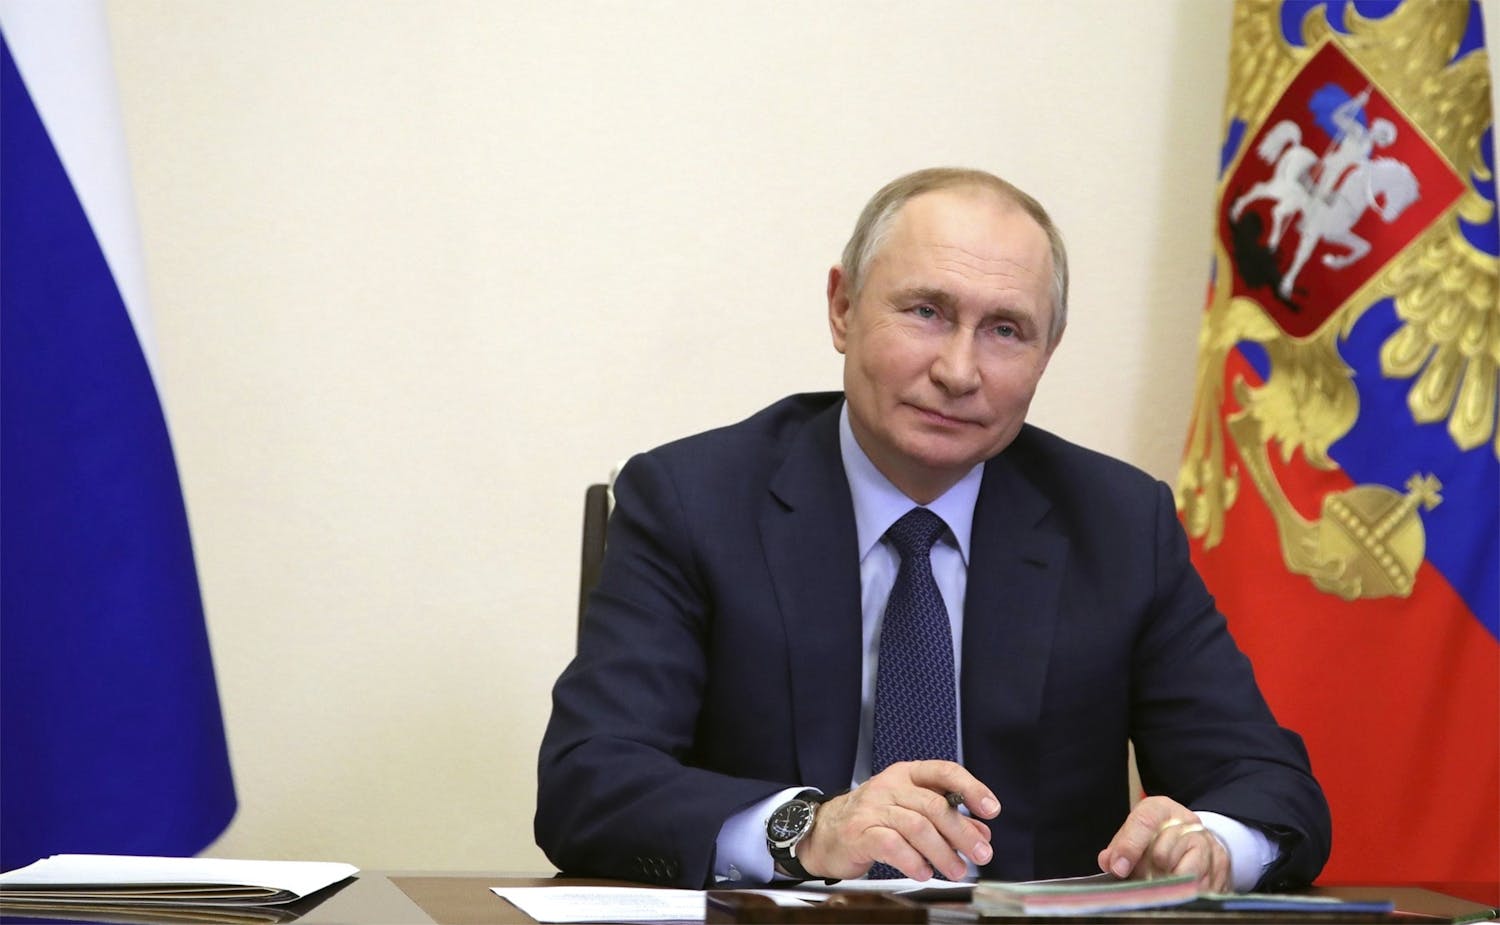 Poutine offre à ses amis des emplois de haut niveau dans des entreprises nationalisées